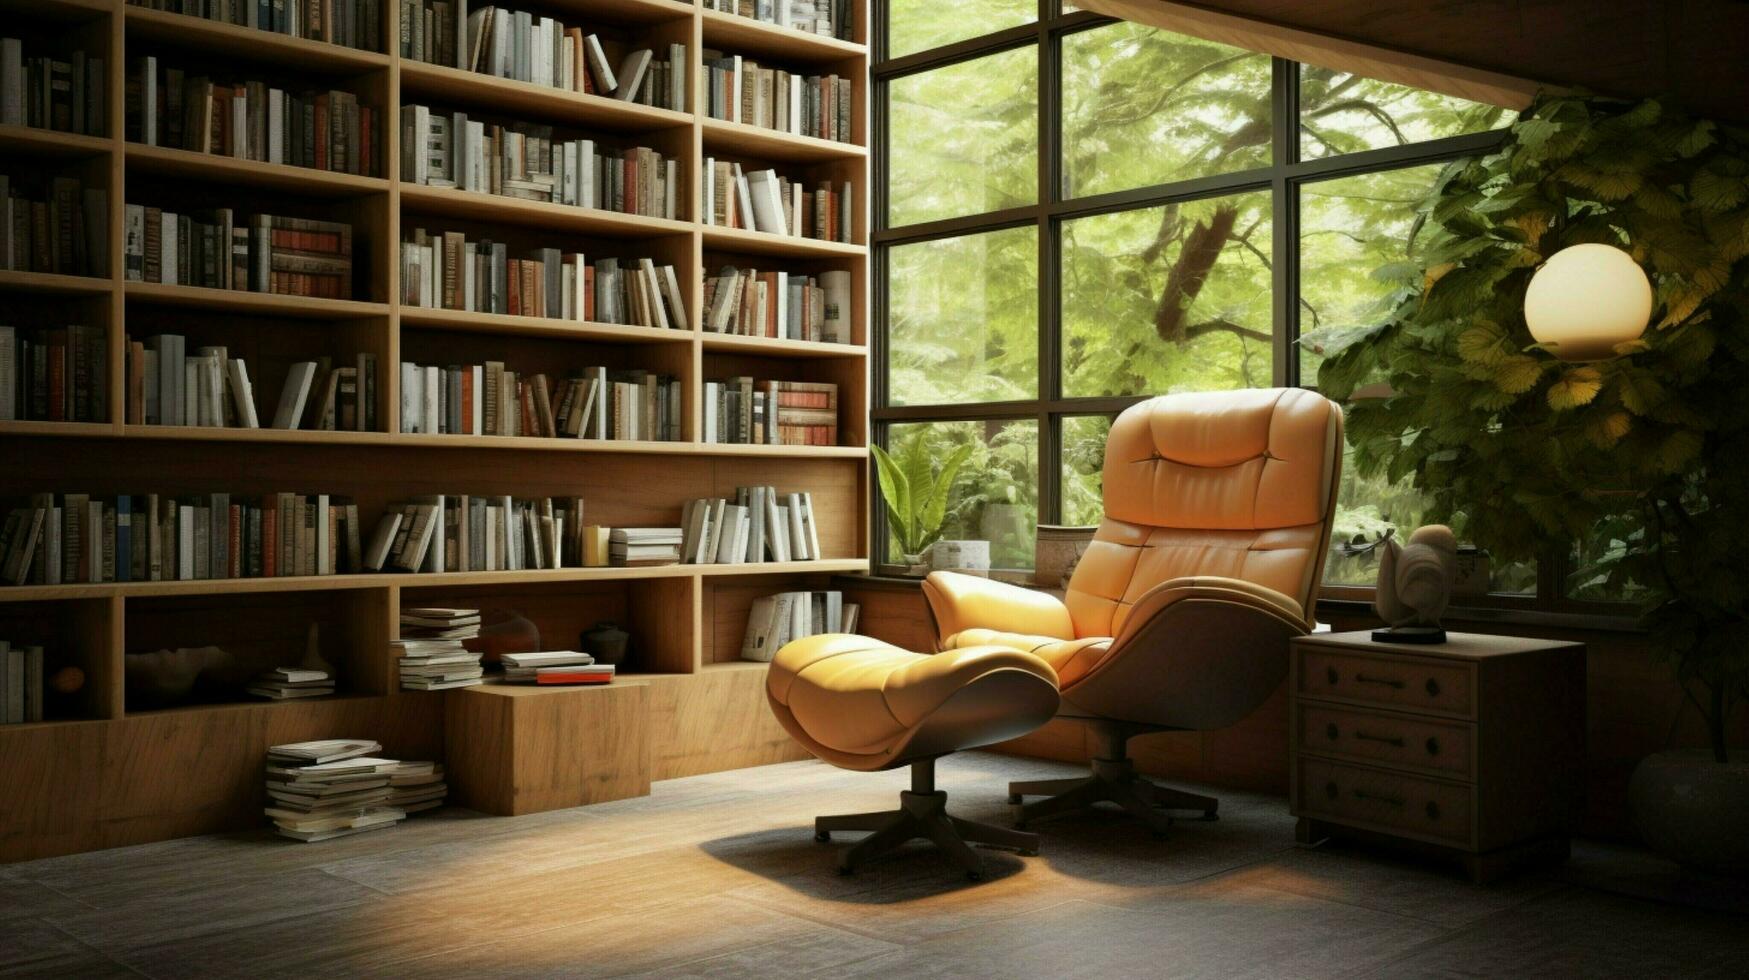 interior biblioteca con moderno estante para libros cómodo Sillón 32941903  Foto de stock en Vecteezy